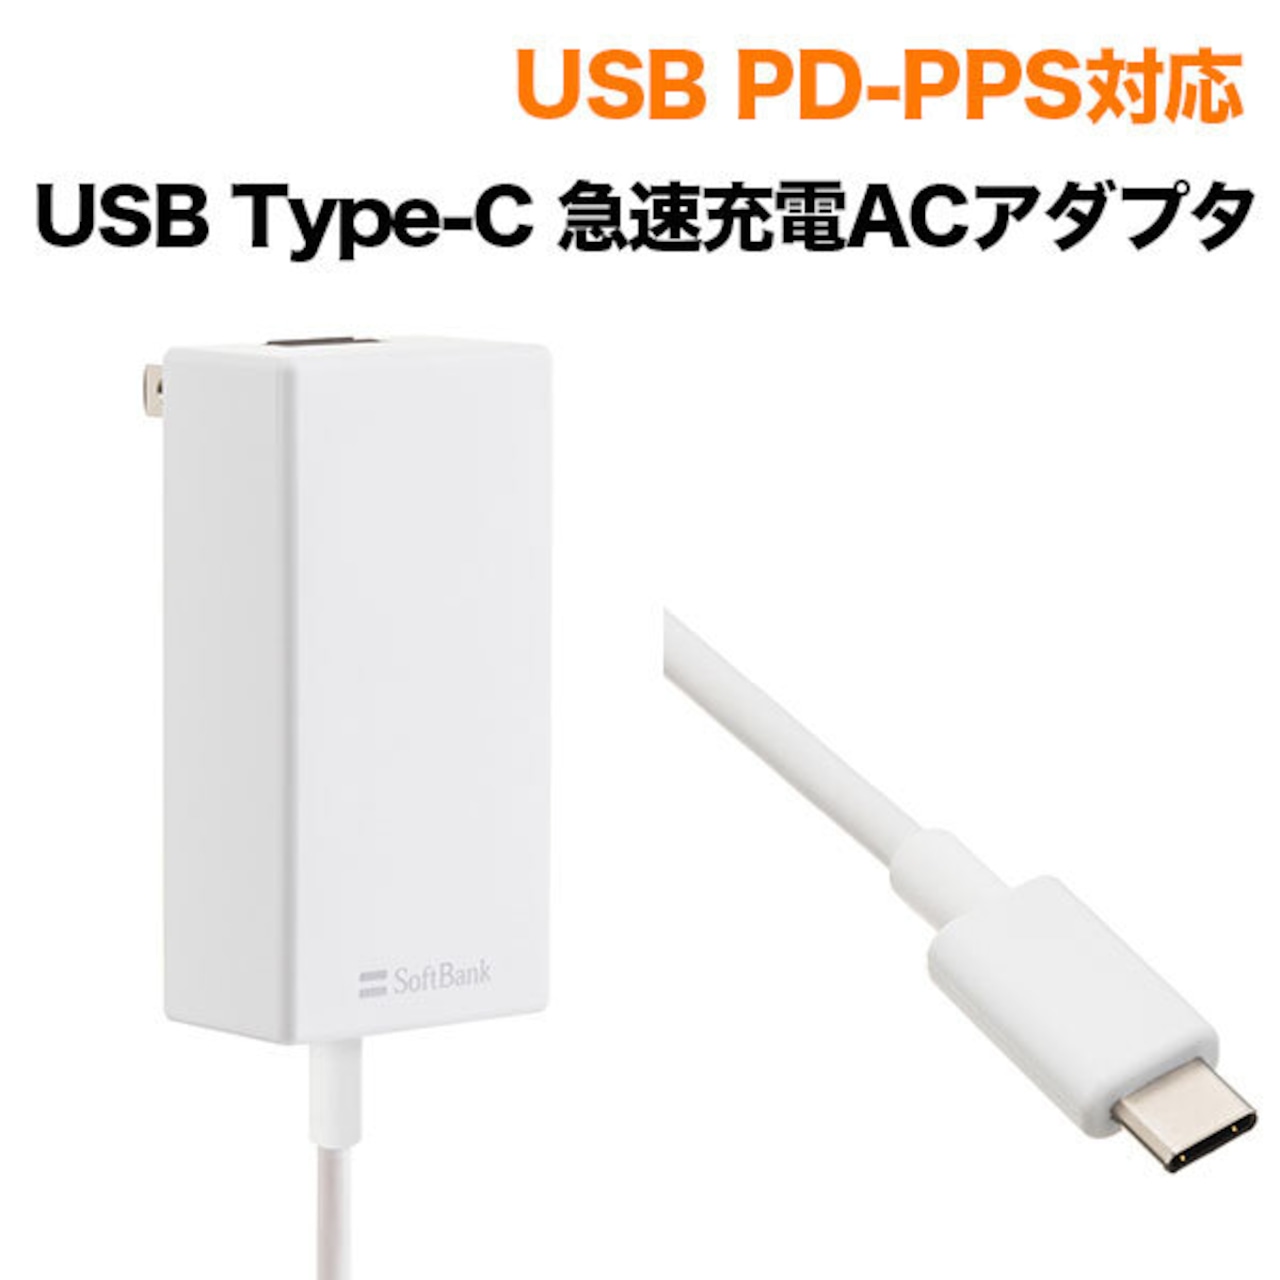 【アウトレット】USB PD-PPS対応 USB Type-C(TM) 急速充電 ACアダプタ